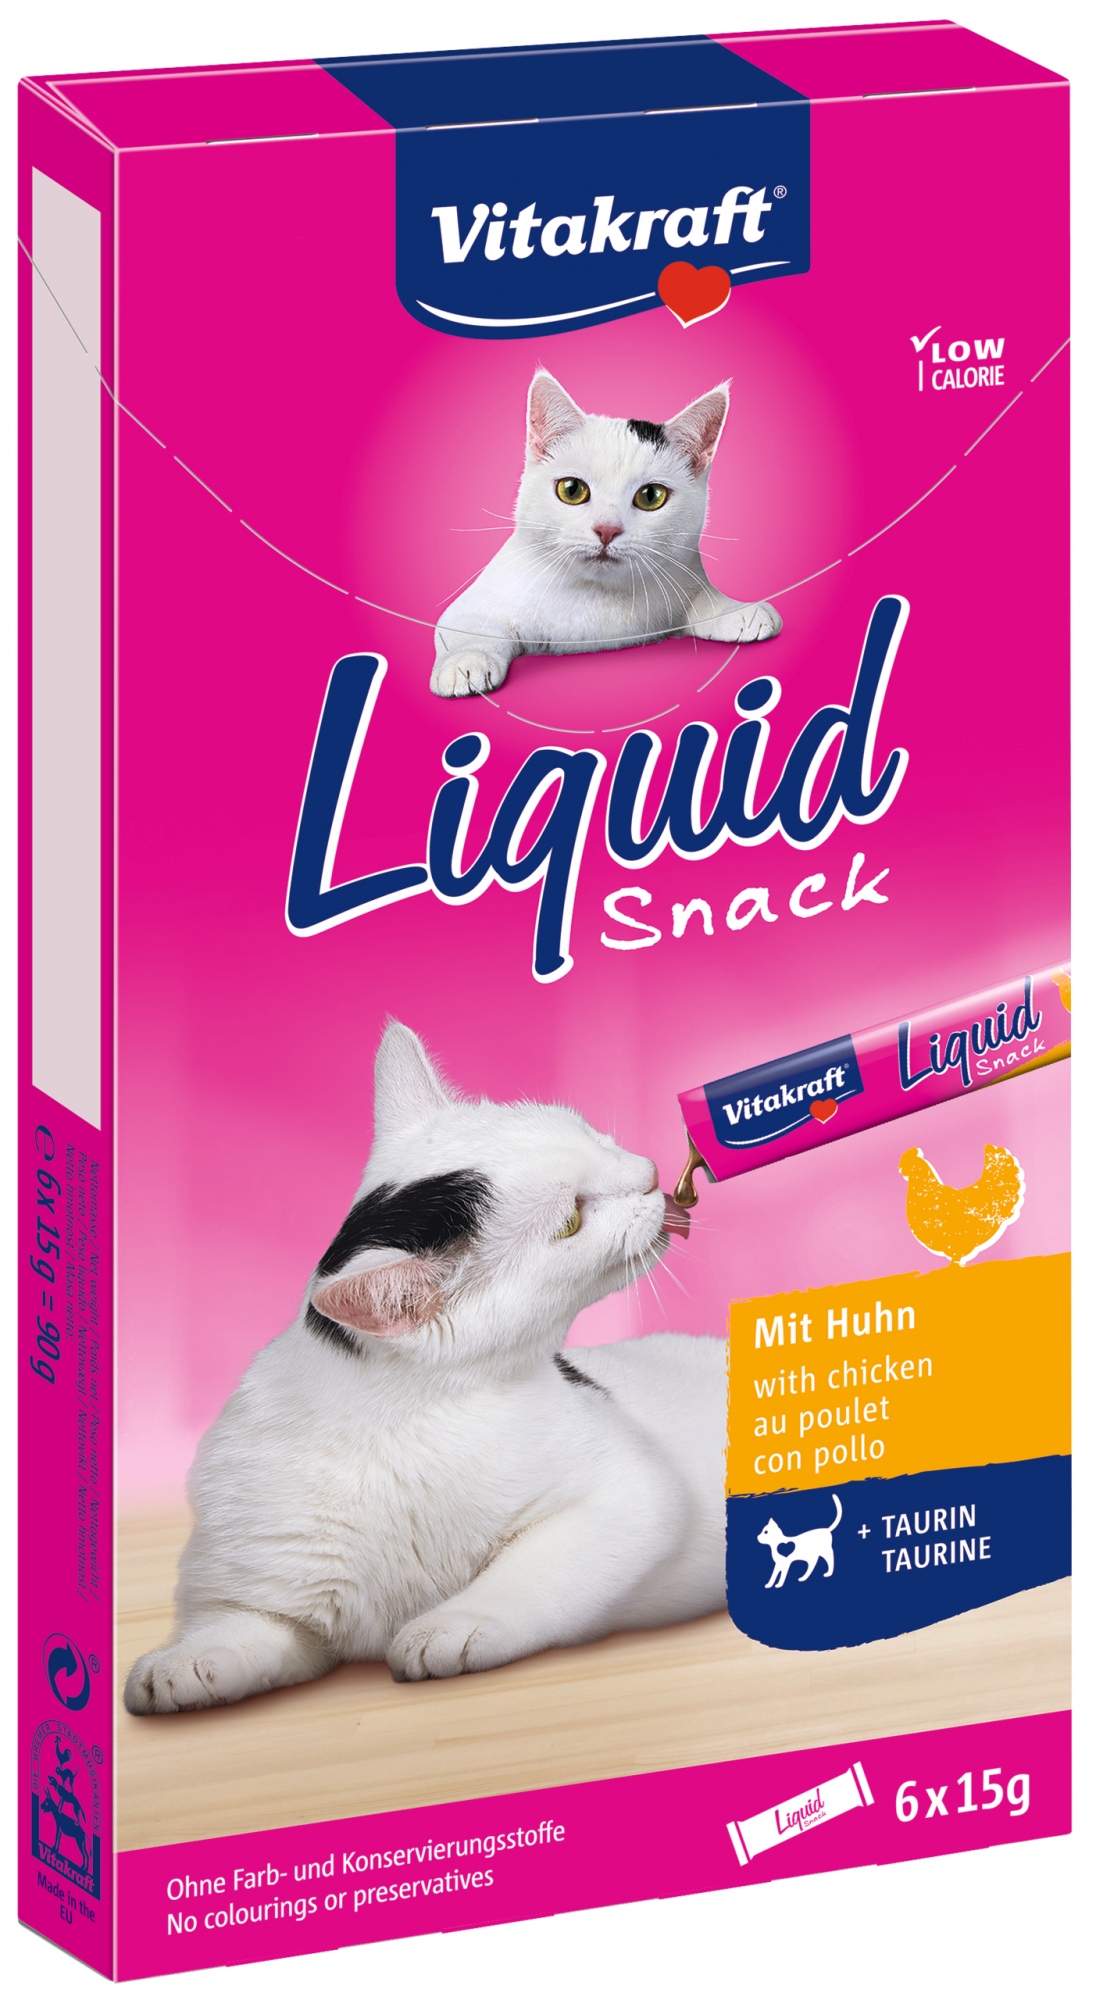 Liquid Snack Vitakraft per gatti - diversi sapori disponibili